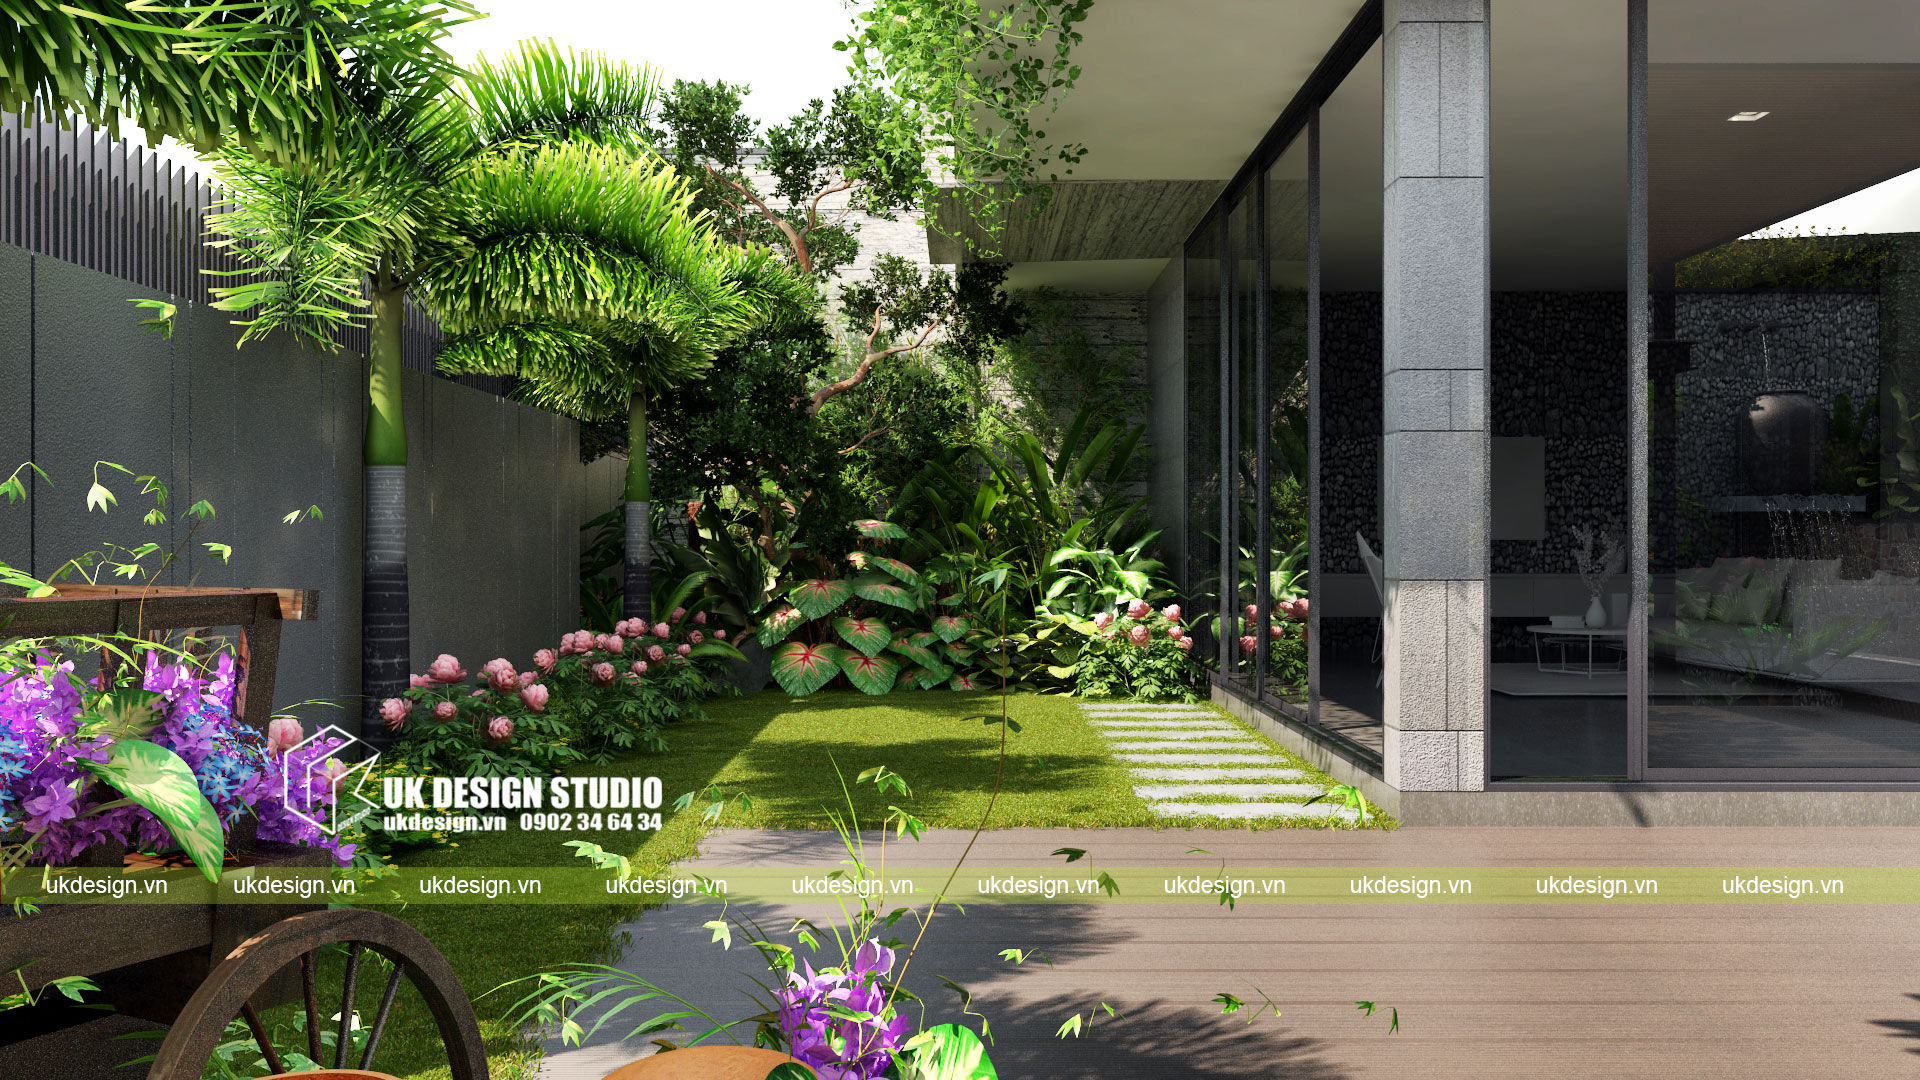 Biệt thự sân vườn, UK DESIGN STUDIO - KIẾN TRÚC UK UK DESIGN STUDIO - KIẾN TRÚC UK Moderne Häuser